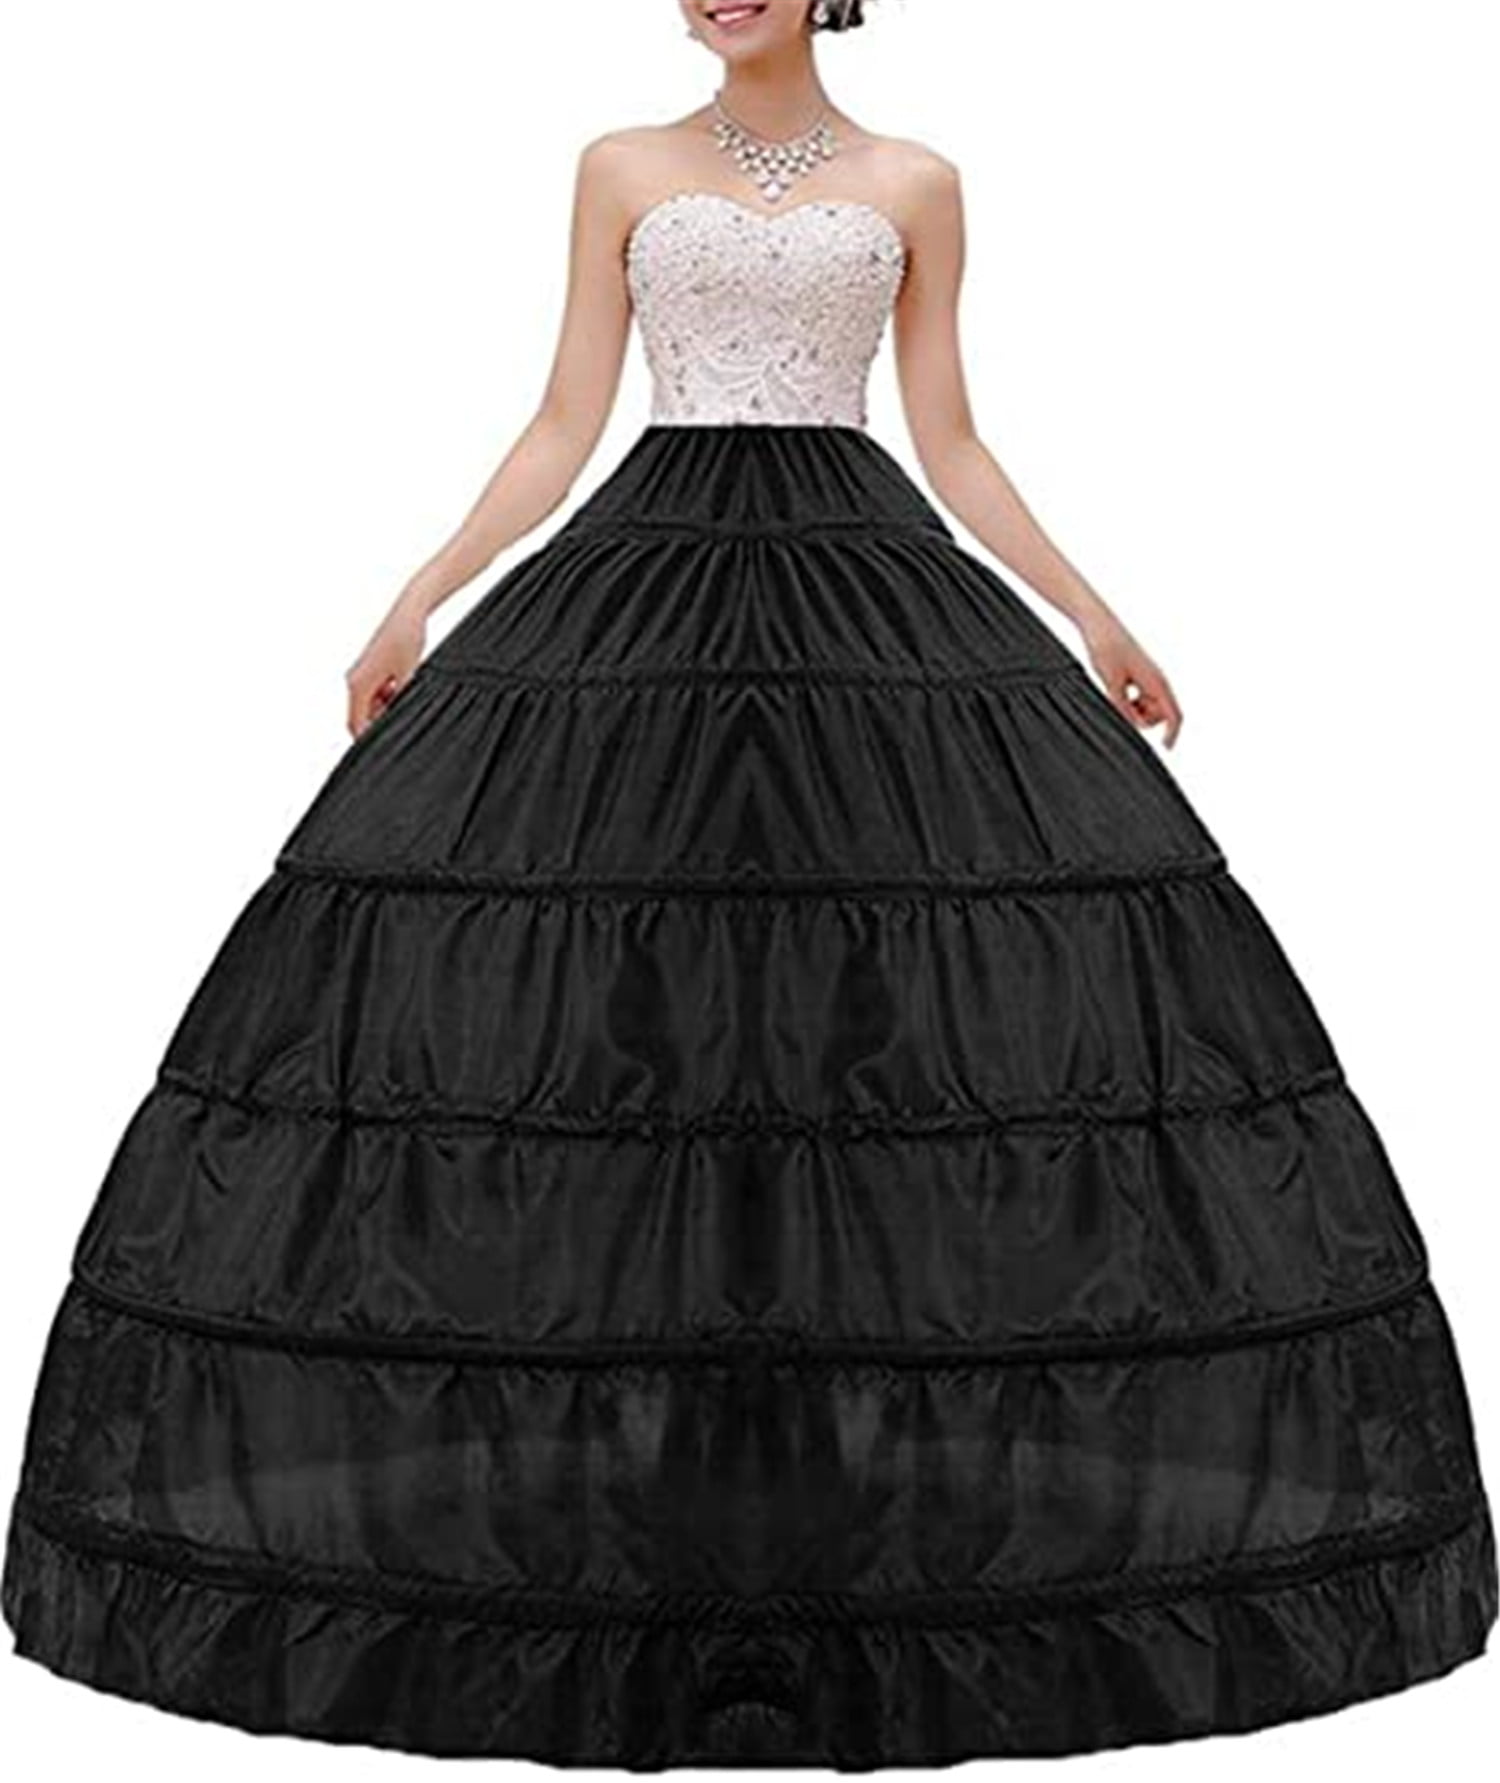 Knee Length wedding party petticoat underskirt Formal dress skirt crinoline Slip 